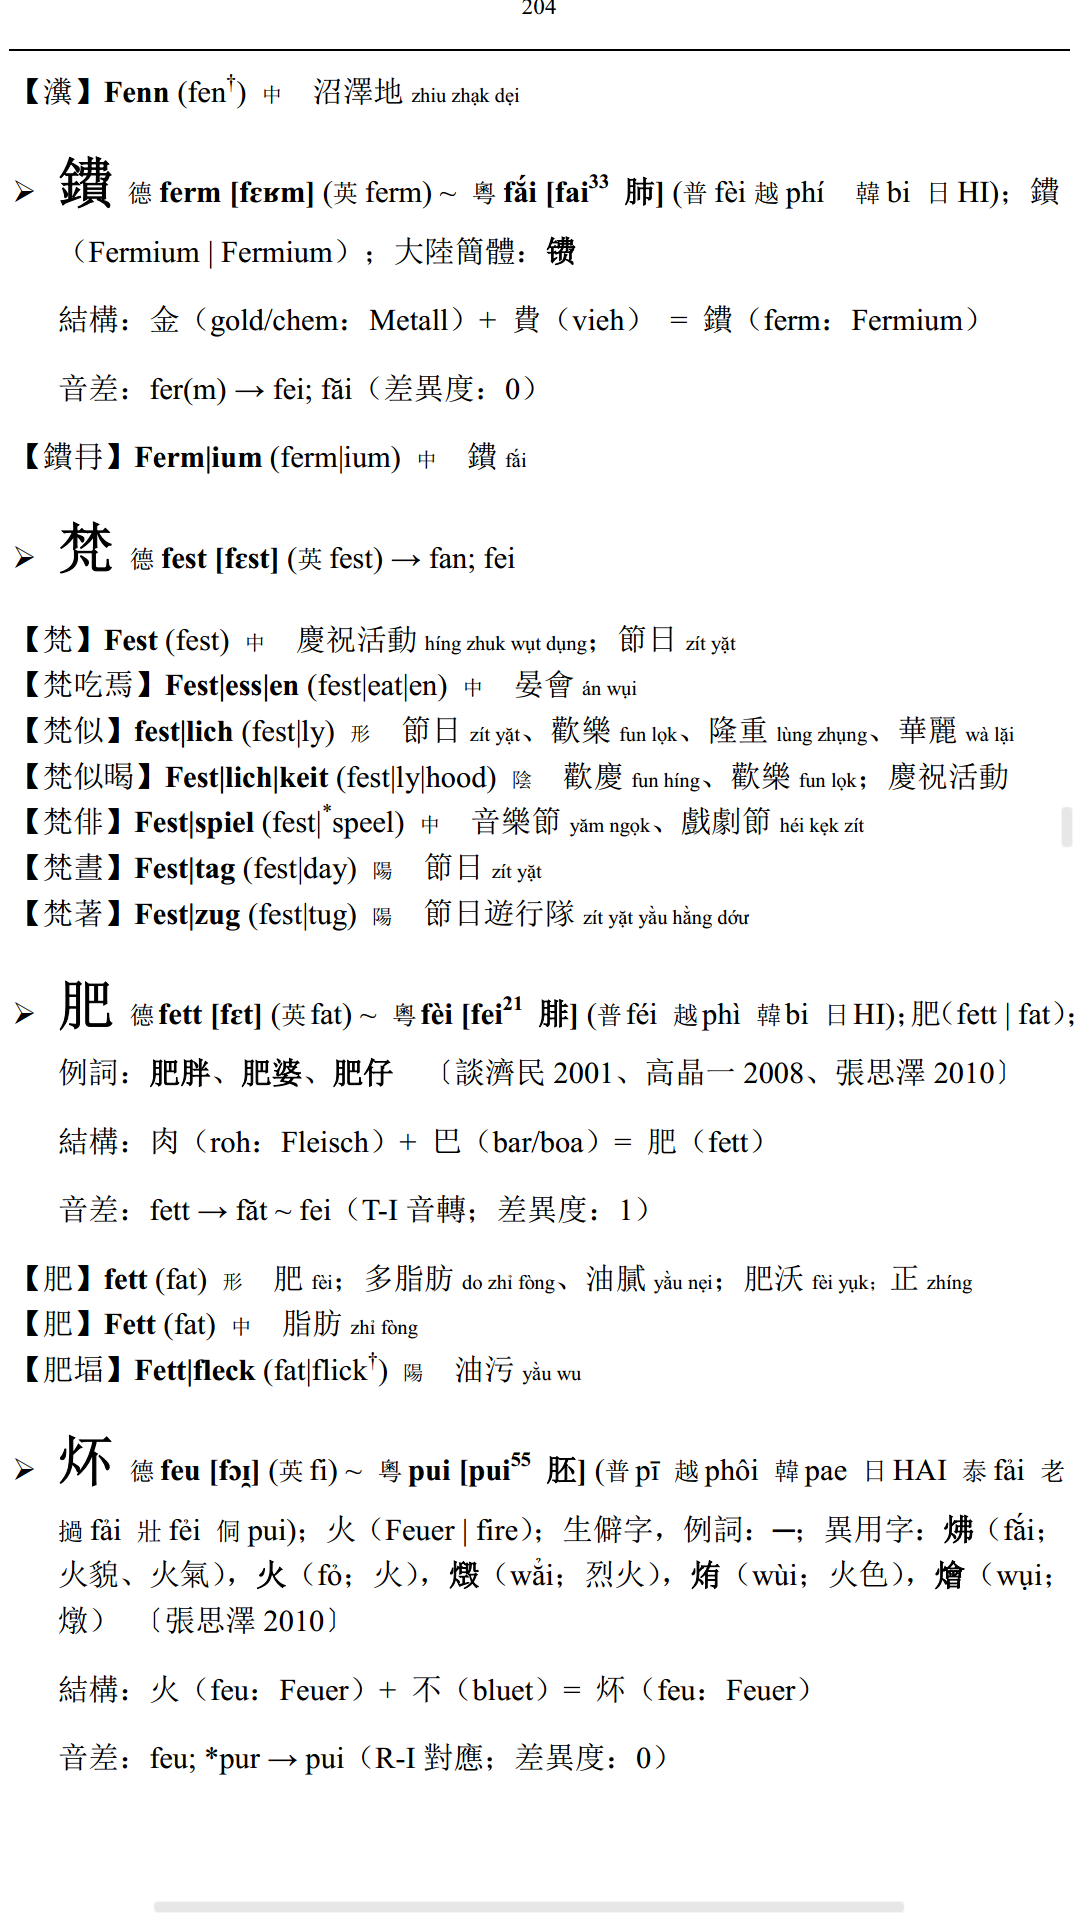 汉语中存在与英语系语言中发音和意思都相似的